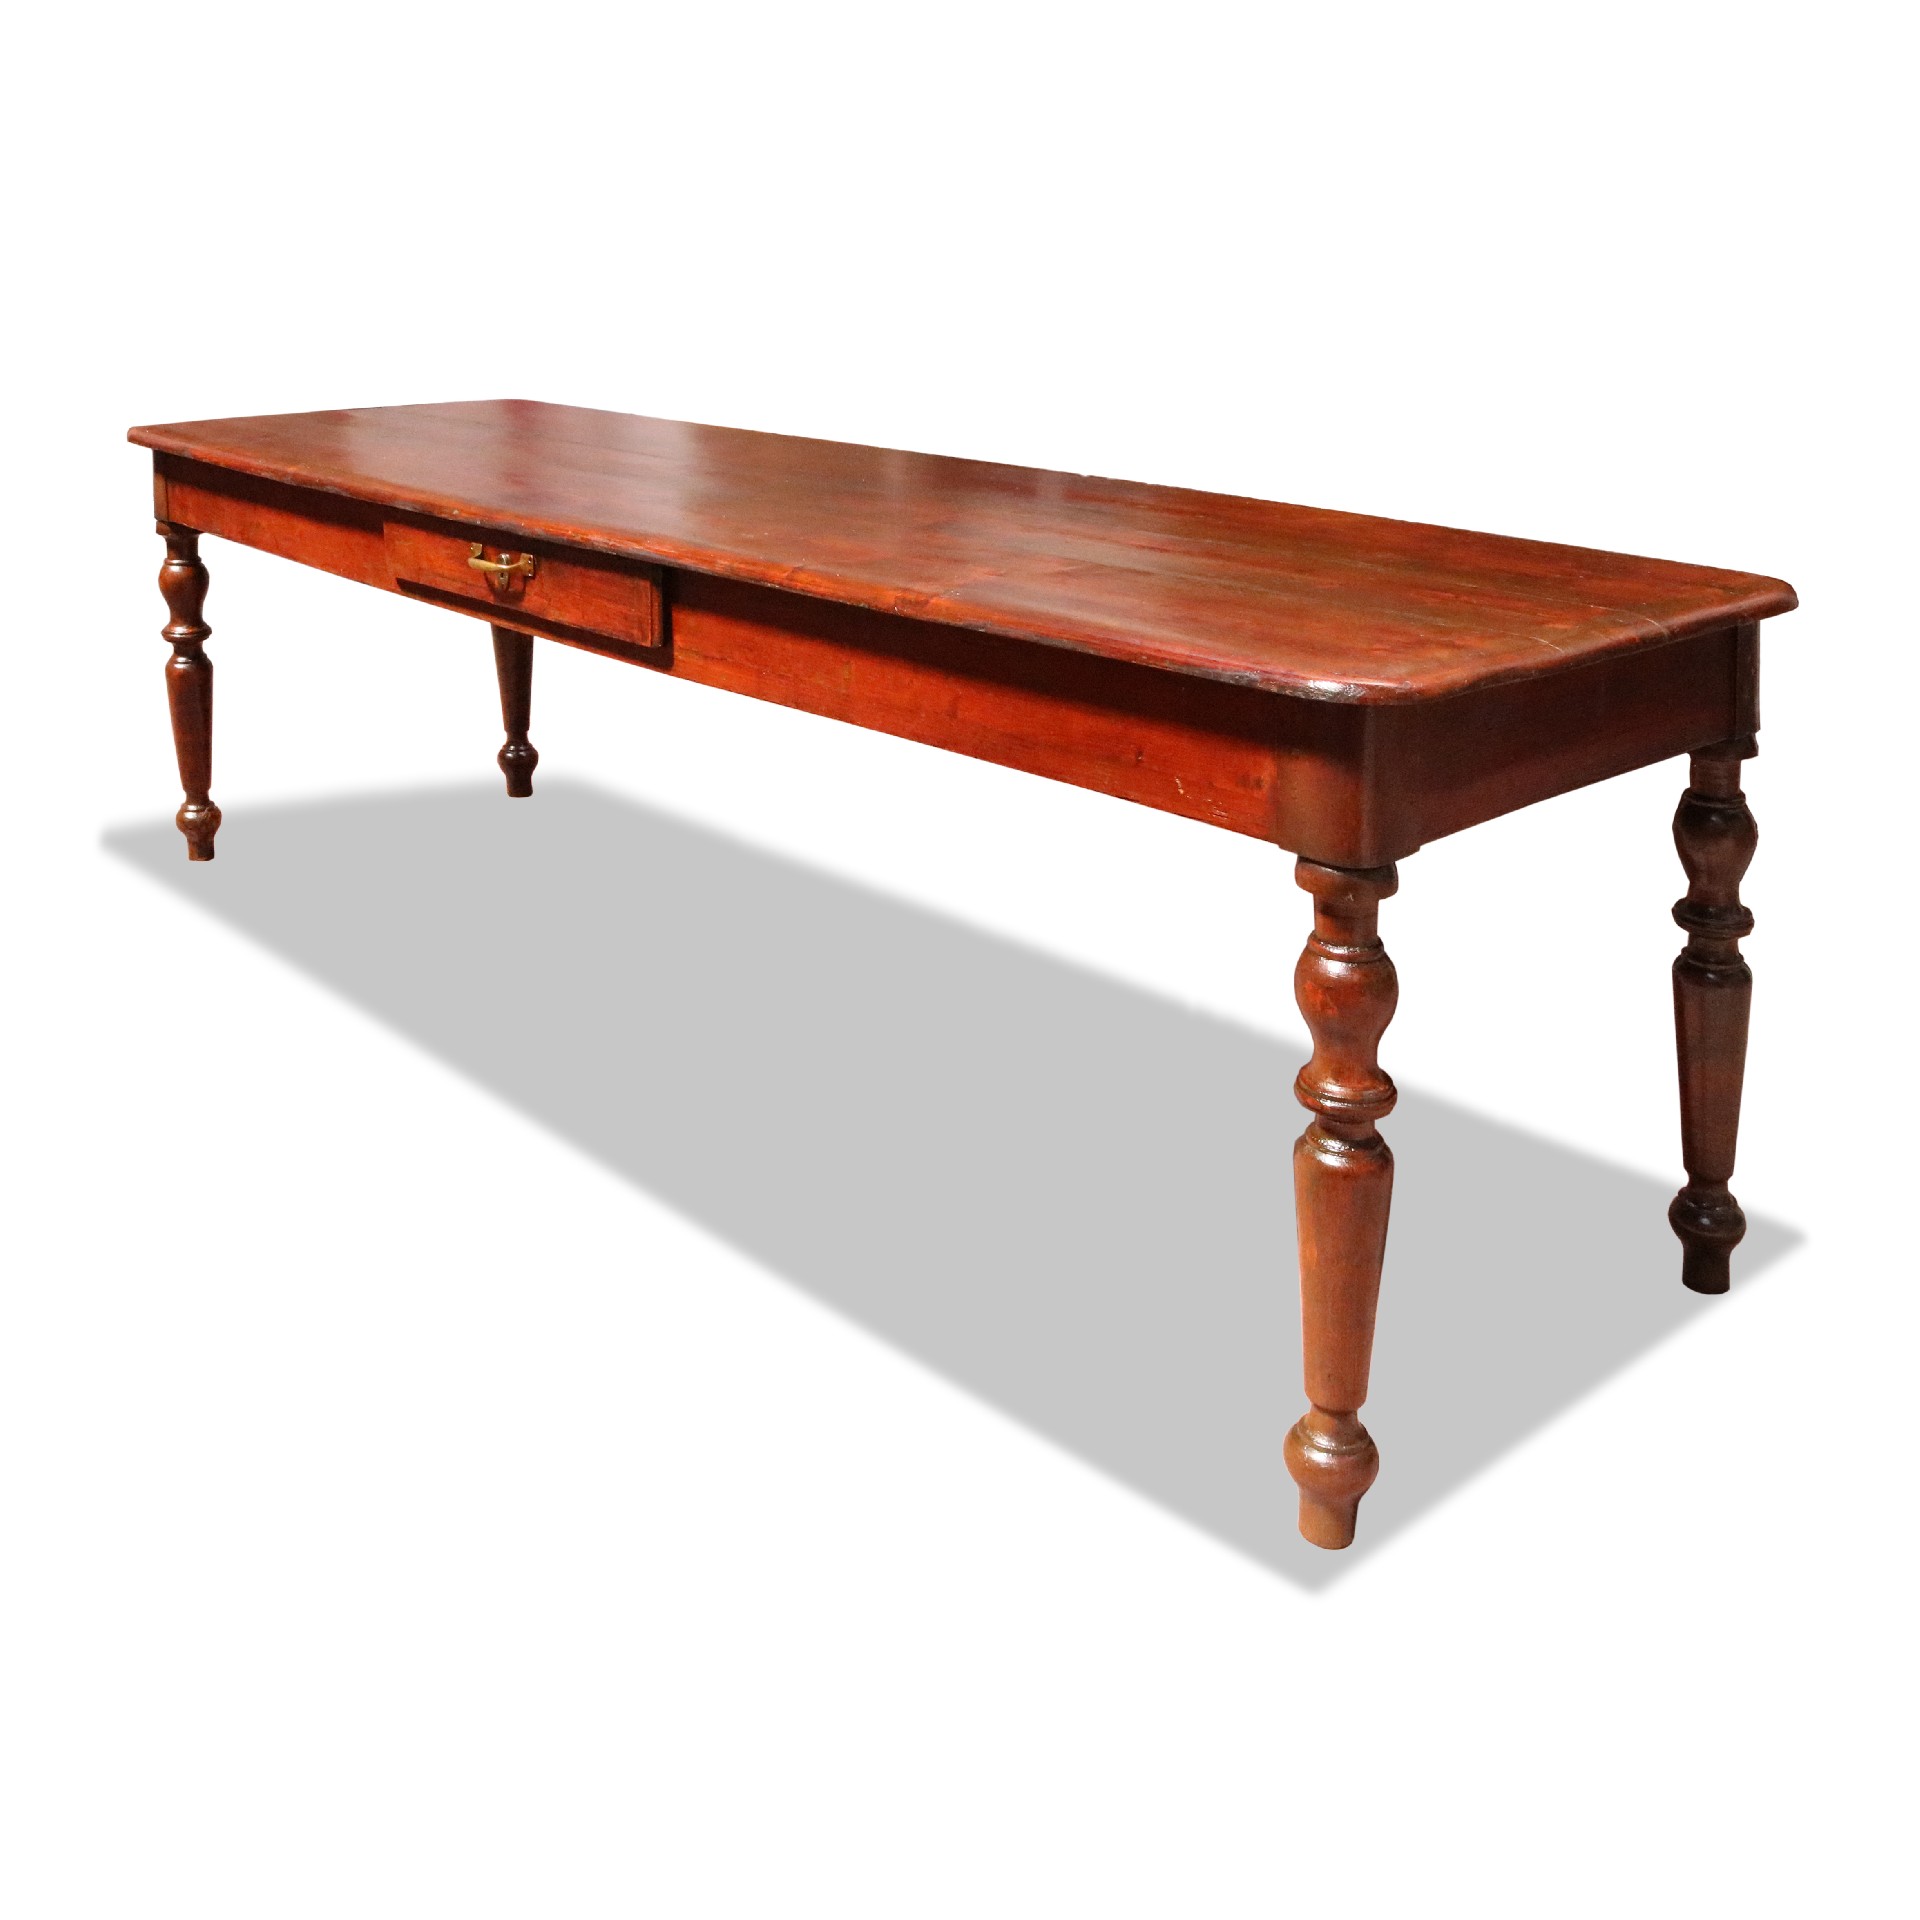 Antico tavolo in legno - Tavoli in legno - Tavoli e complementi - Prodotti - Antichità Fiorillo